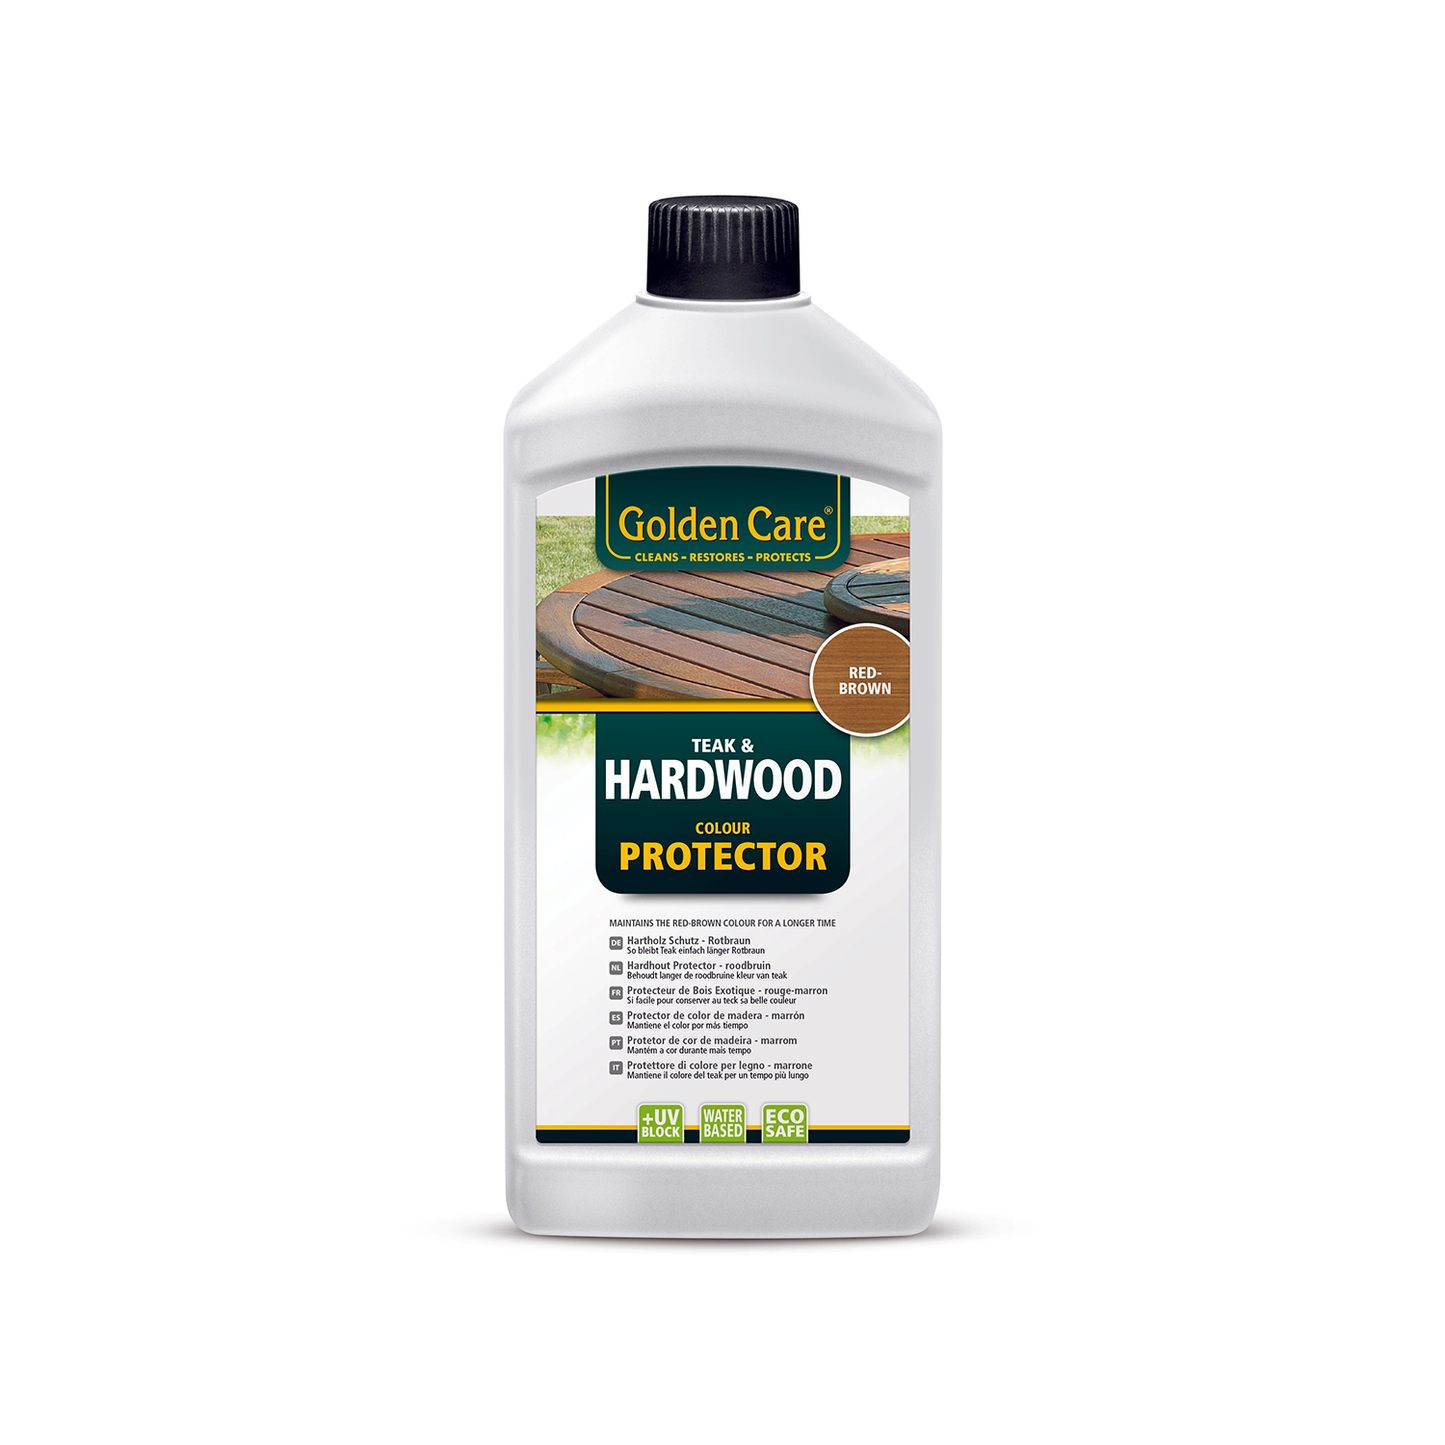 Golden Care Hardwood Protector 1 Liter